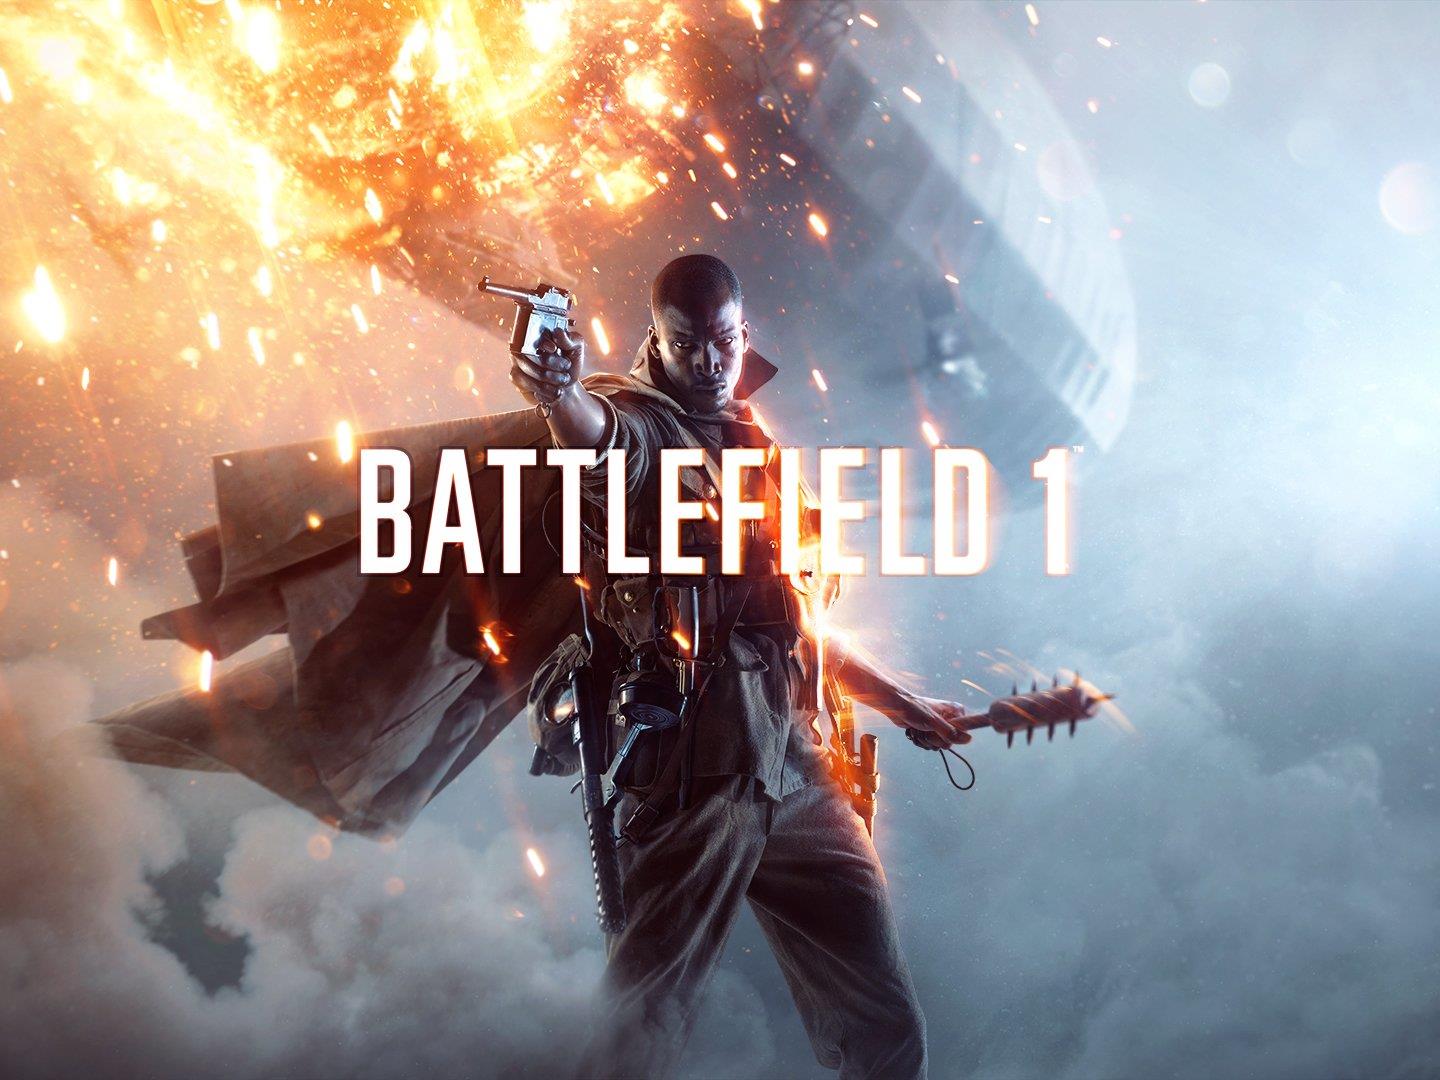 Komischer Titel, schnell erklärt: Das neue "Battlefield 1" spielt im ersten Weltkrieg